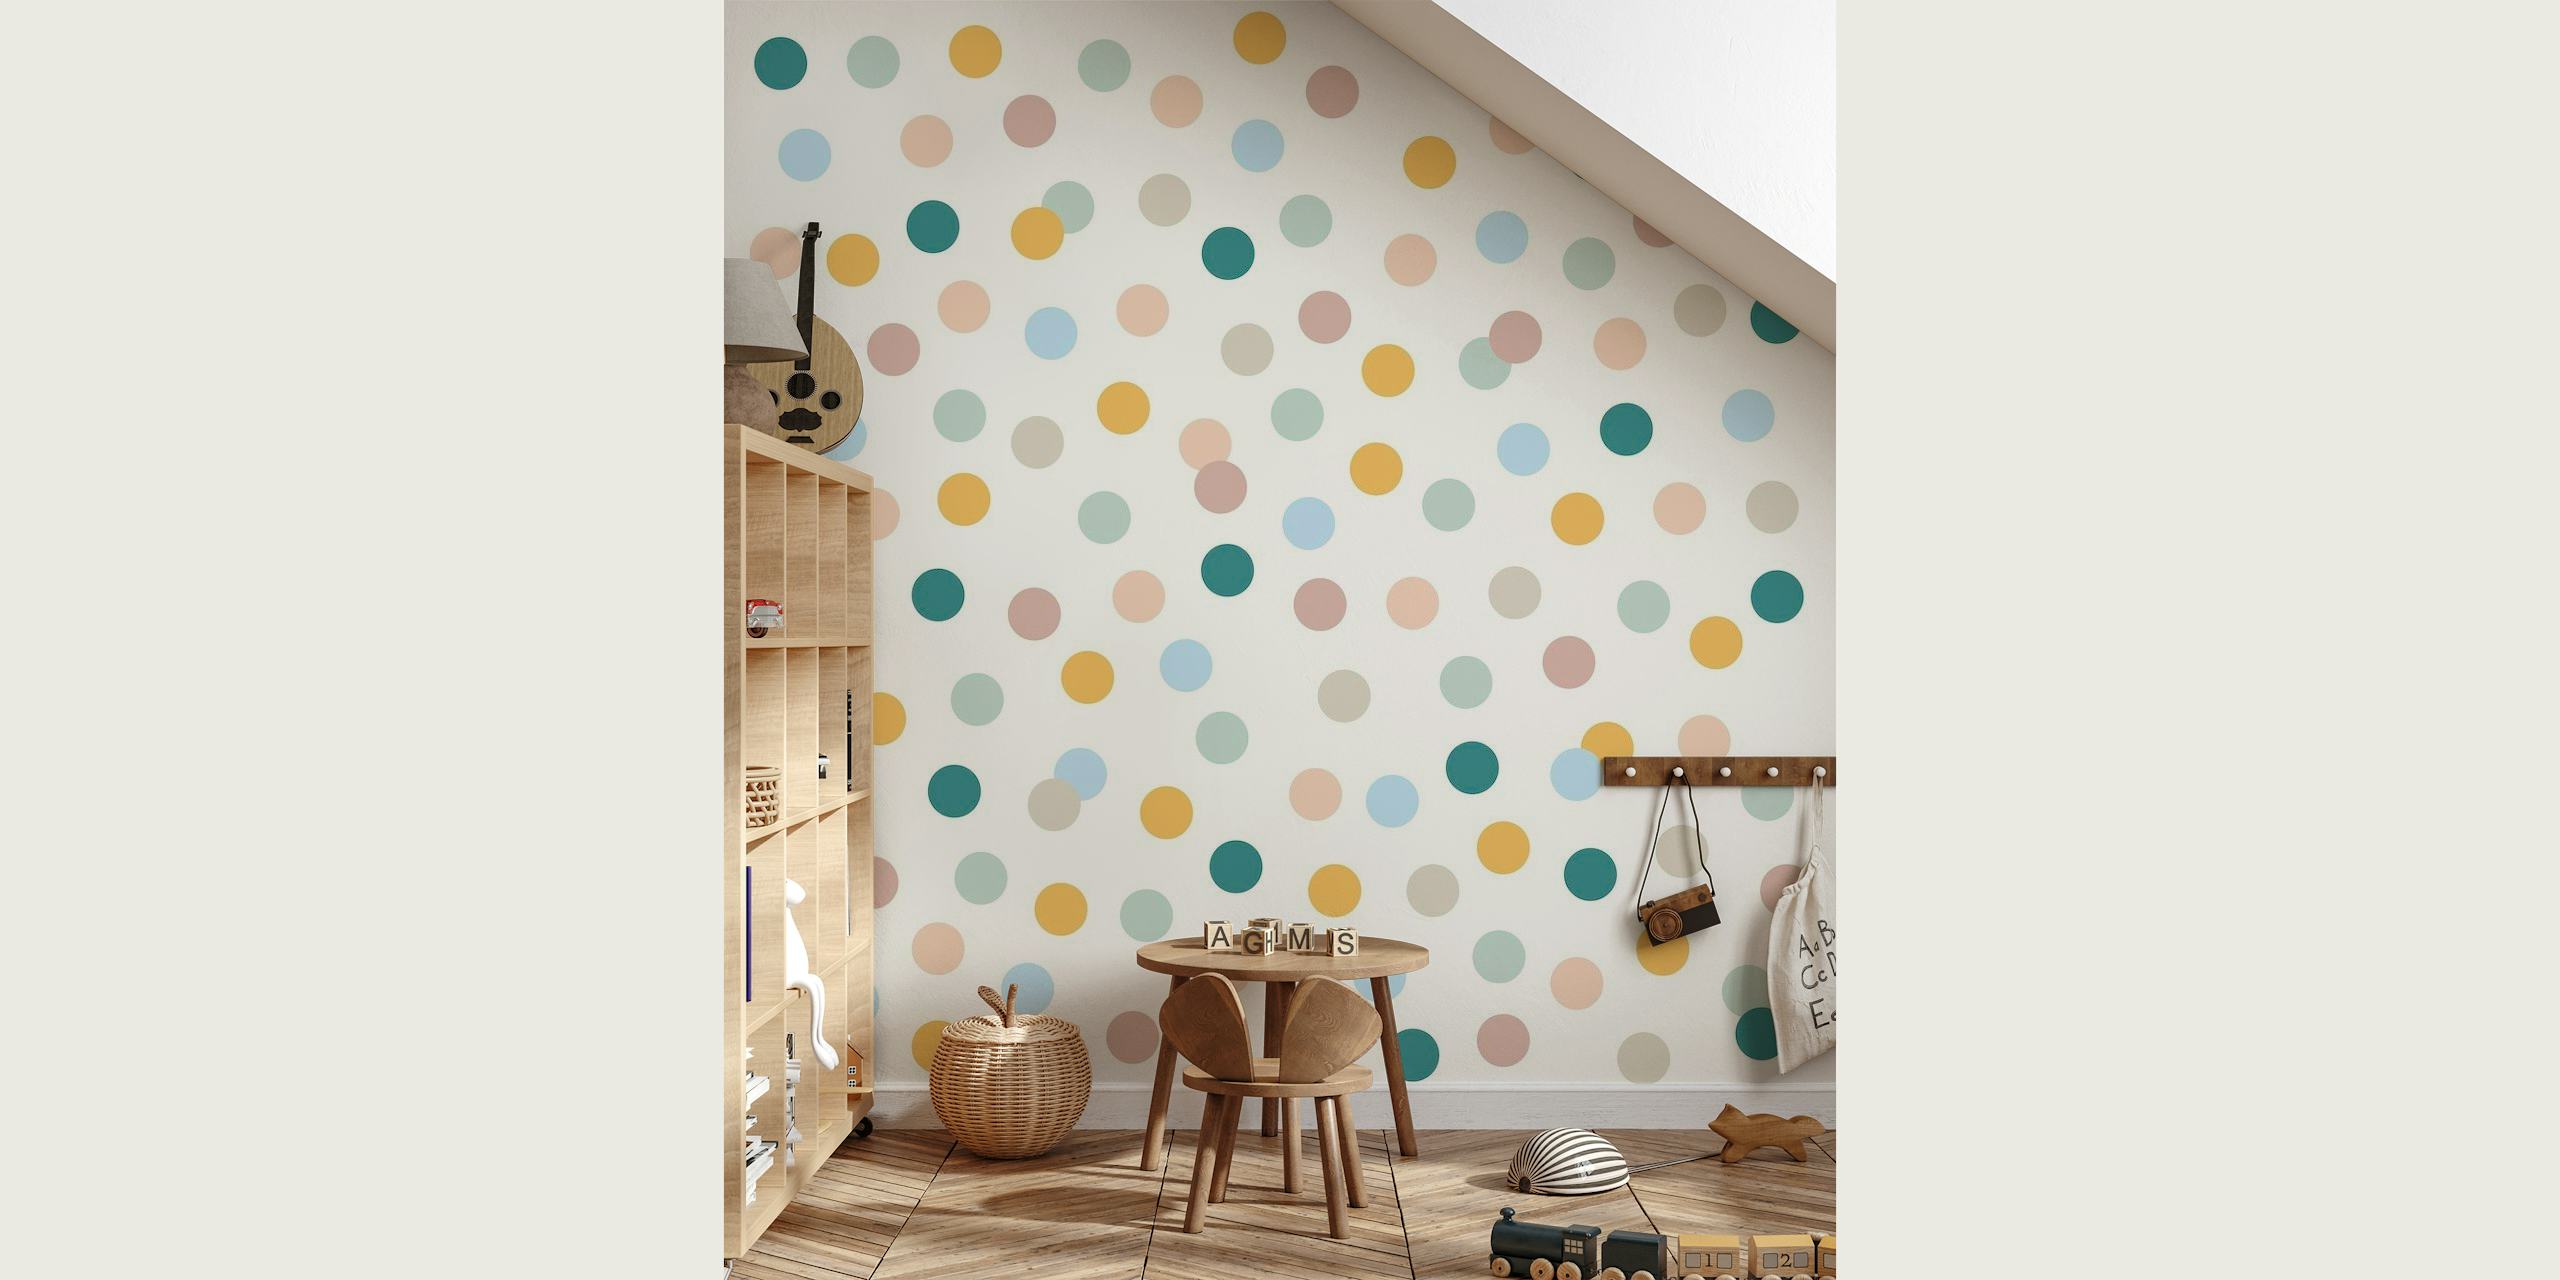 Colorful Polka Dots behang